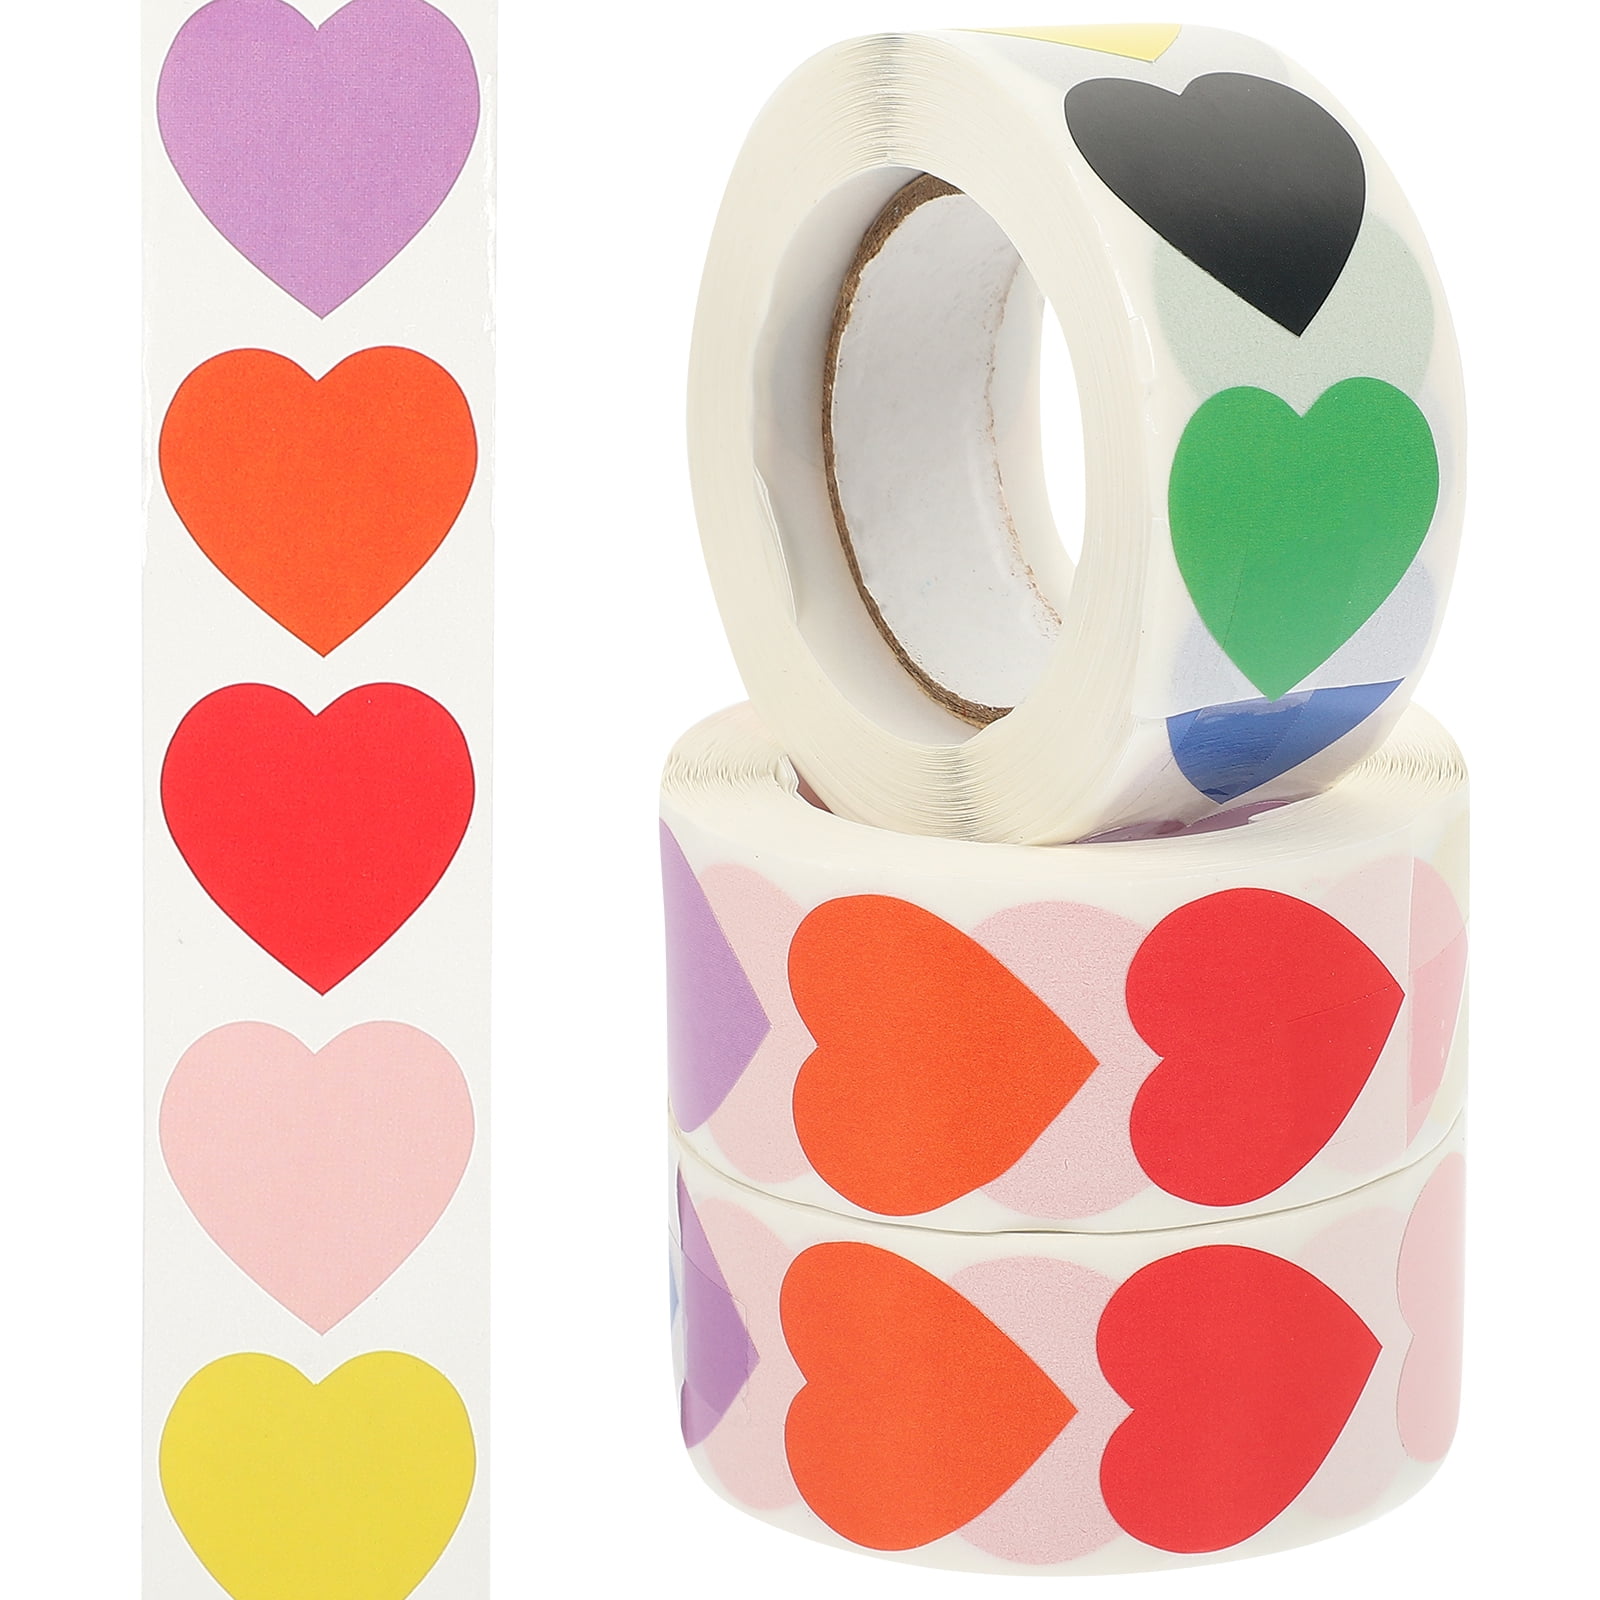 3 Rolls Blank Heart Stickers Gift Sealing Sticker Heart Sticker Roll Heart  Label Stickers 